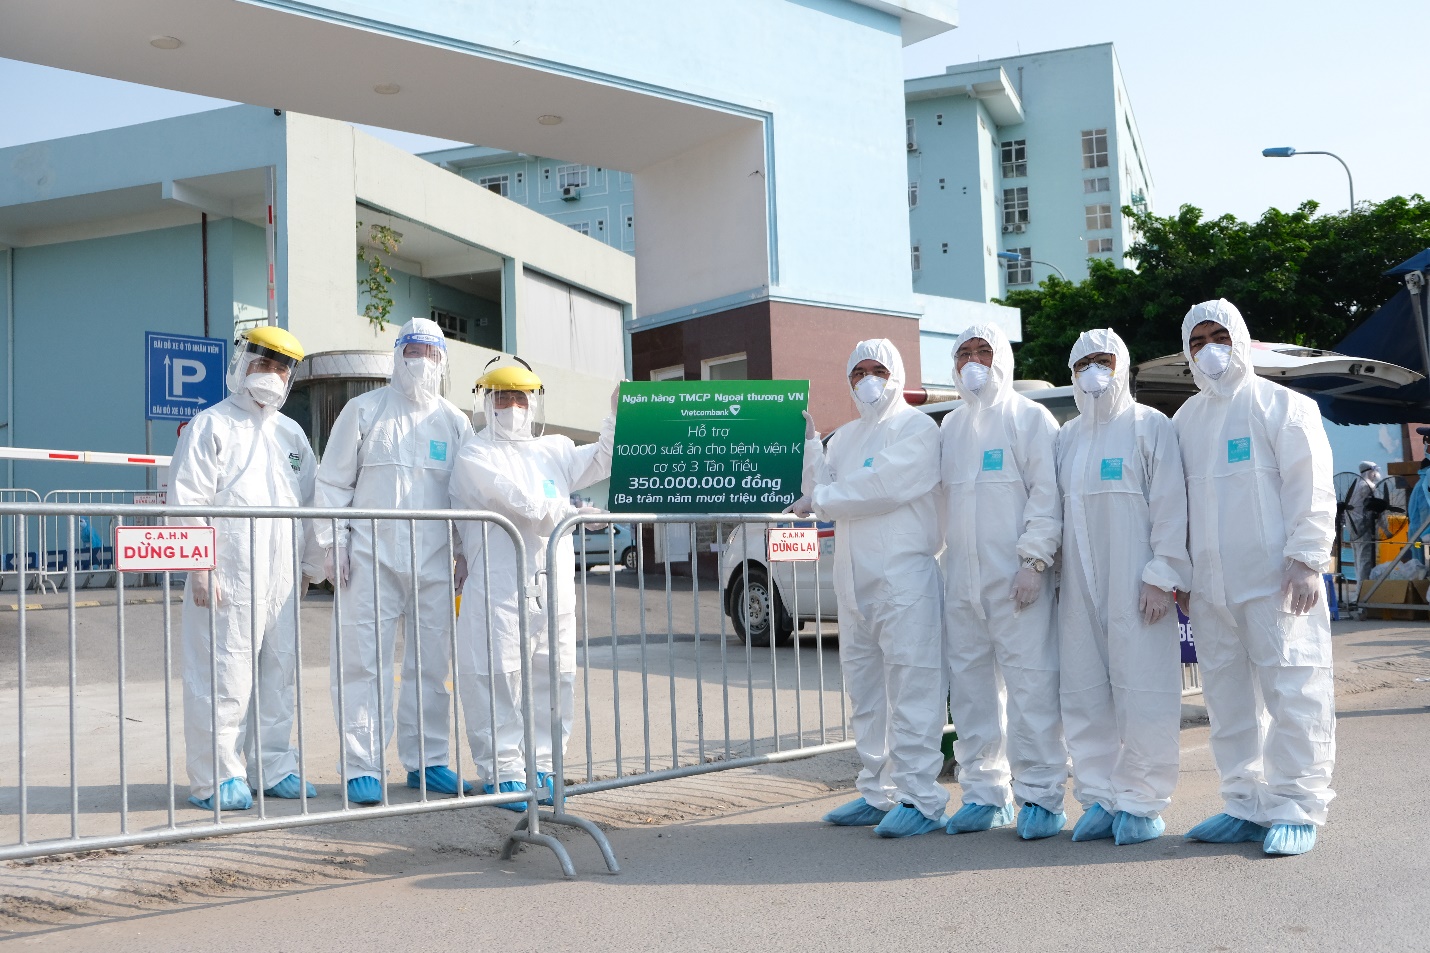 Vietcombank trao tặng 5 tỷ đồng và 10.000 suất ăn hỗ trợ Bệnh viện K cơ sở Tân Triều phòng chống dịch COVID-19 - Ảnh 2.